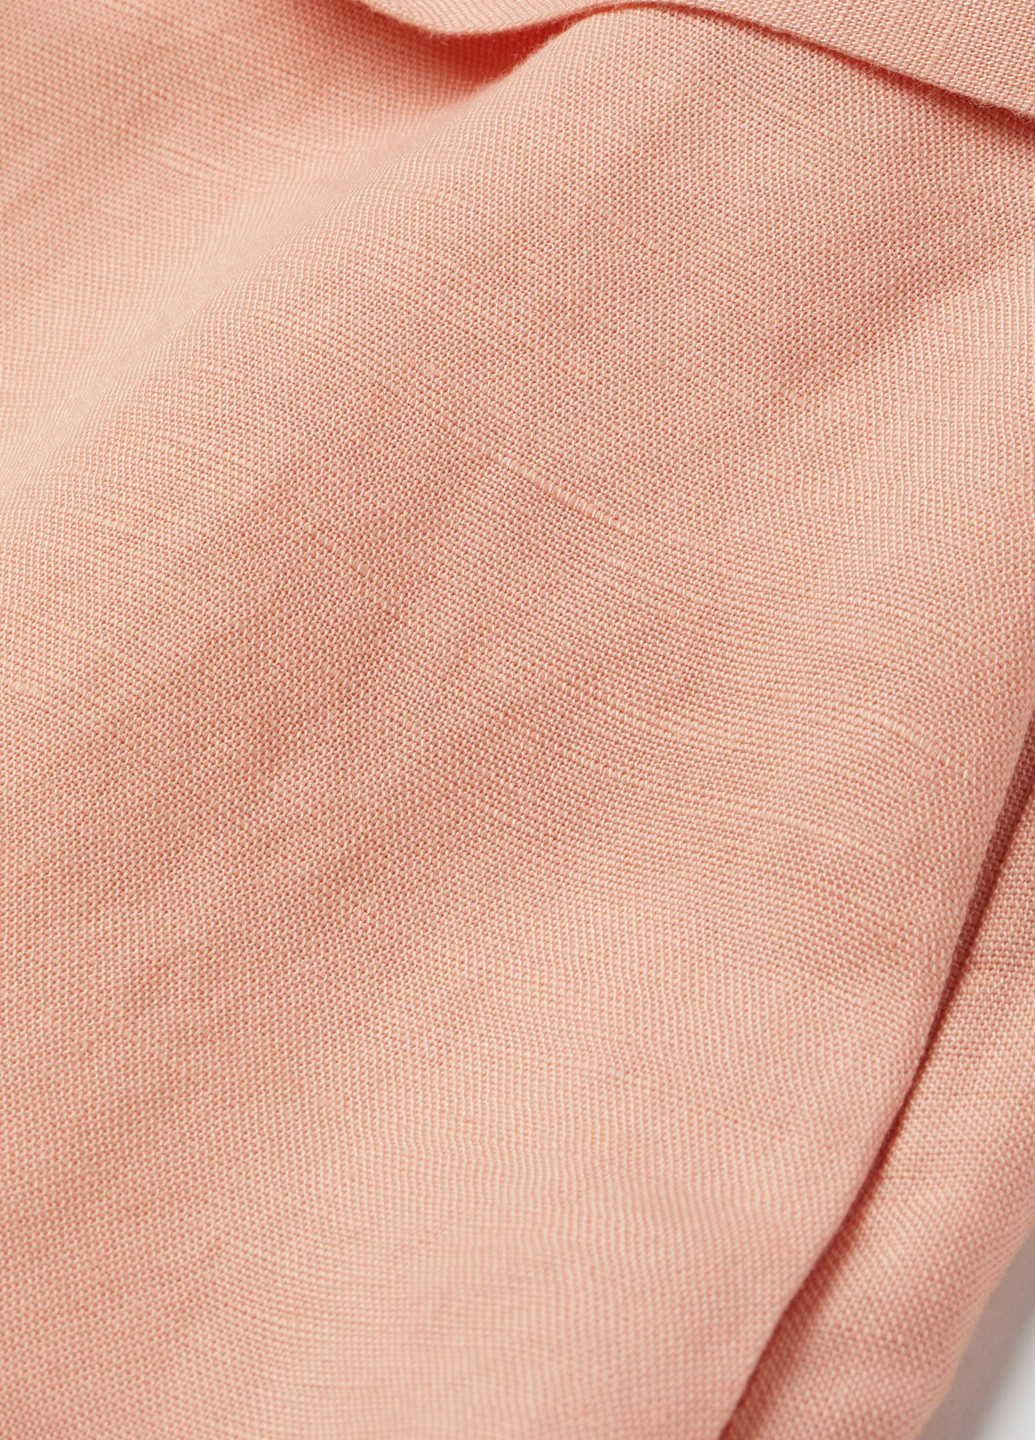 Комбинезон H&M комбинезон-шорты однотонный персиковый кэжуал лен